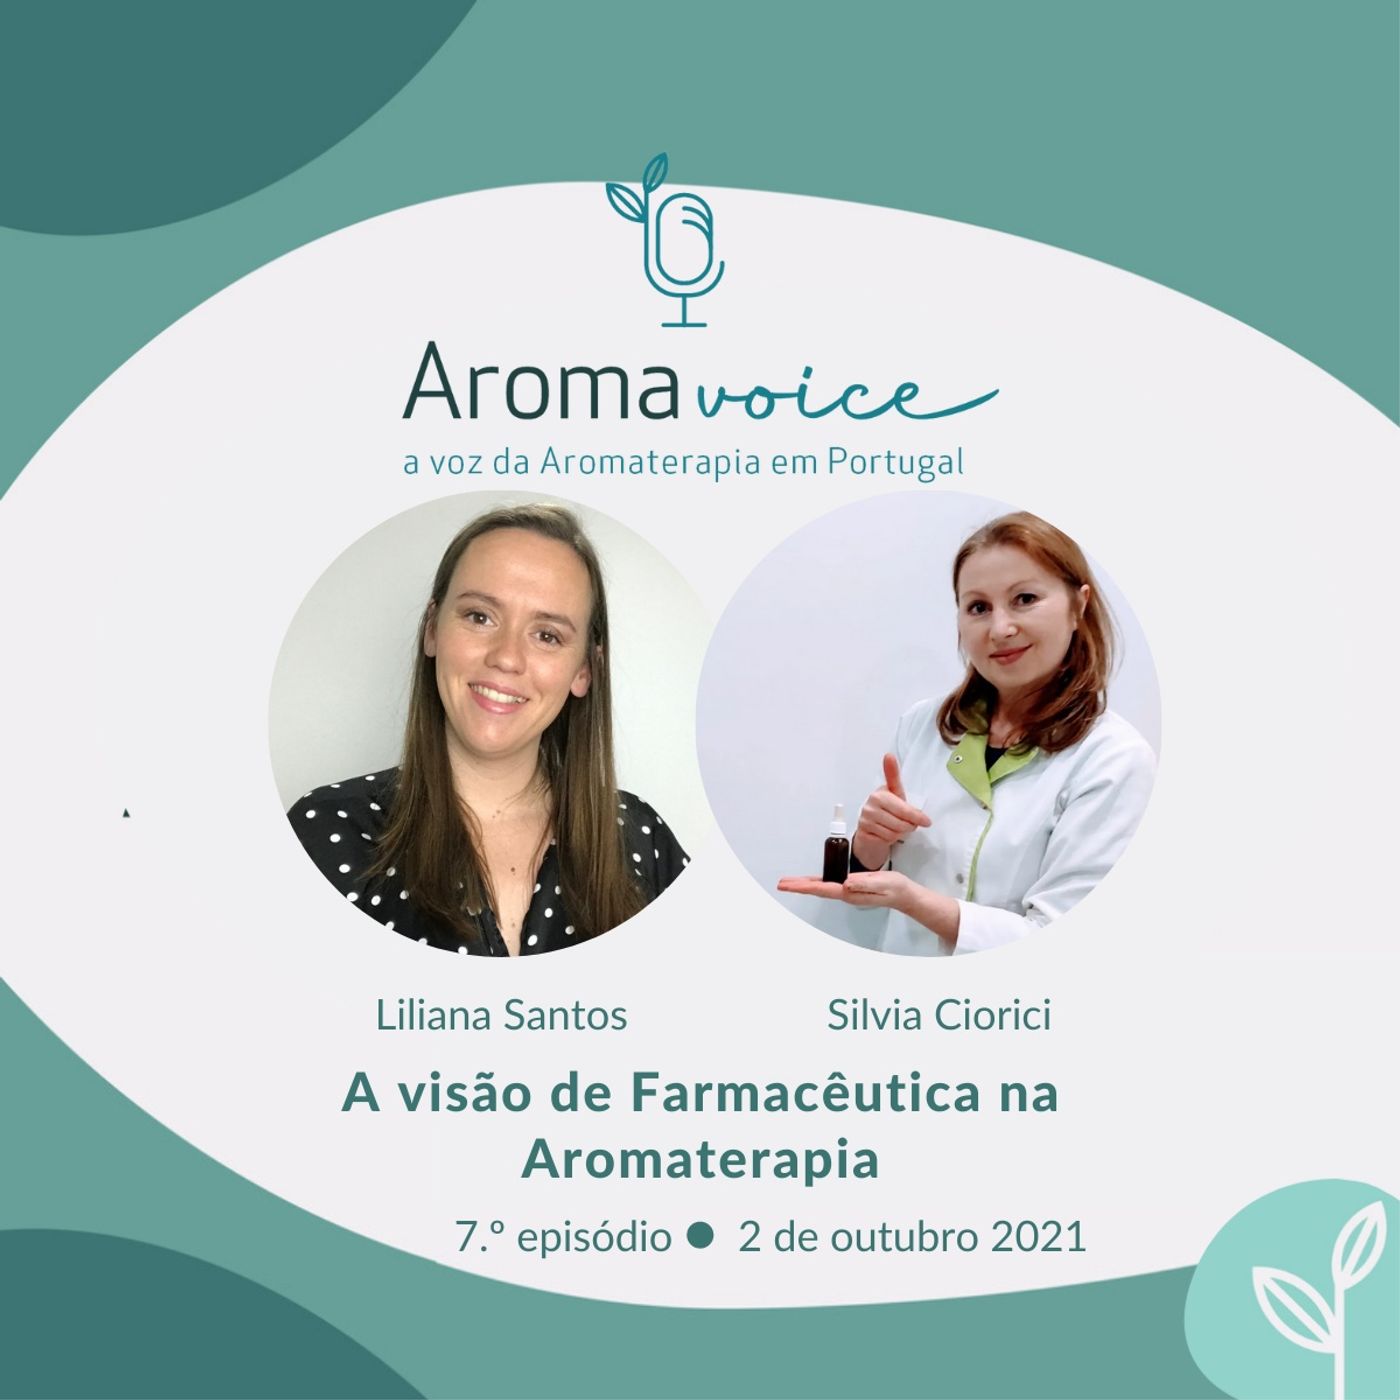 Ep. 7 - A visão de Farmacêutica na Aromaterapia com Silvia Ciorici